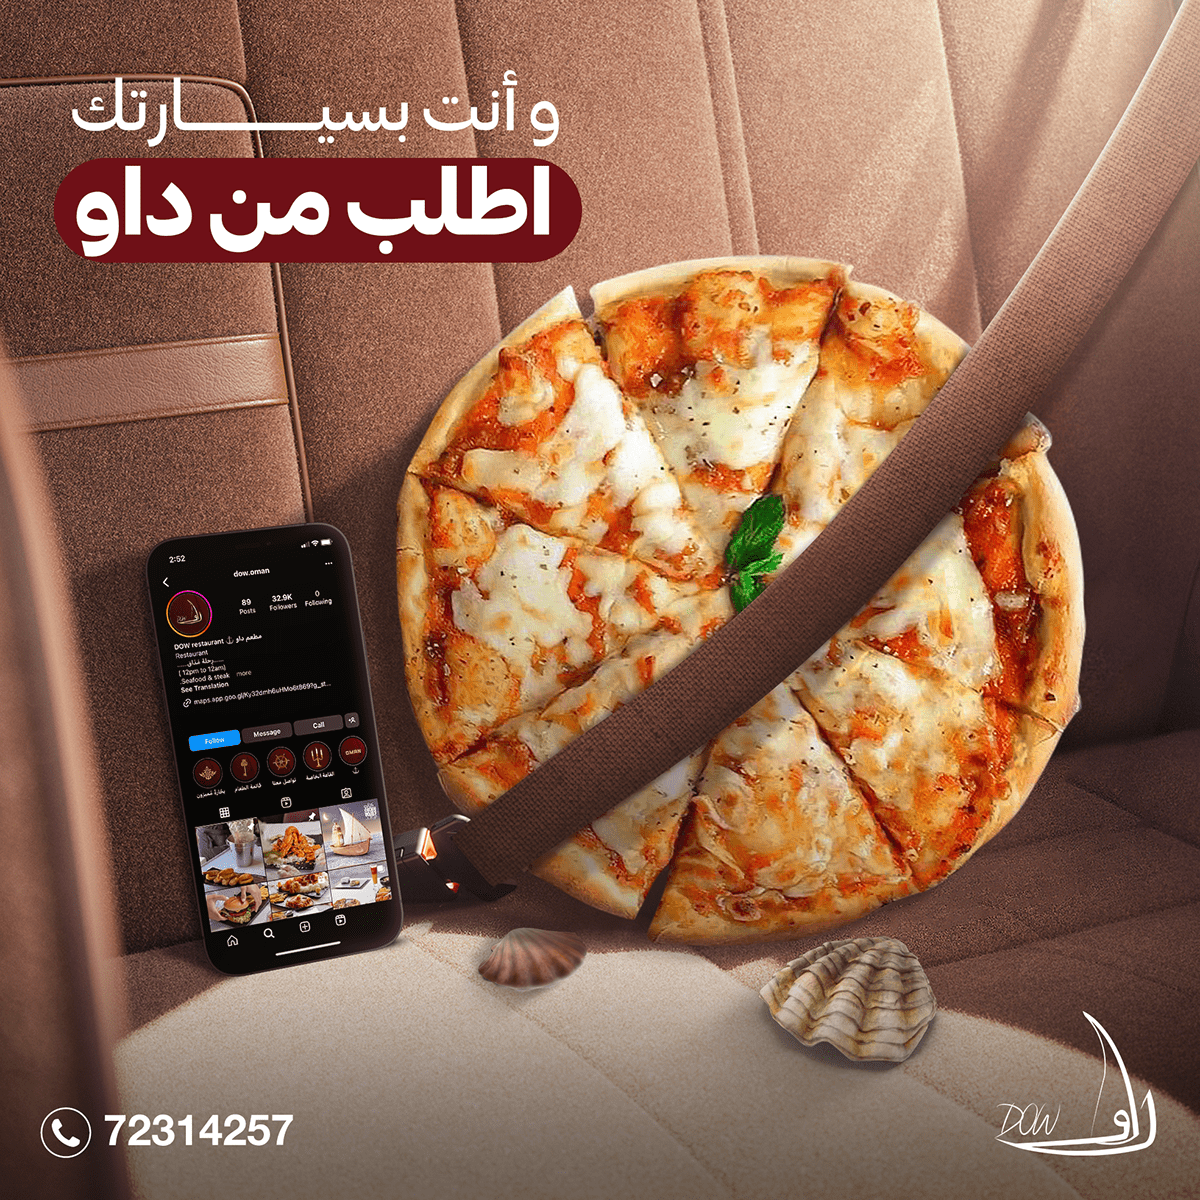 ads Advertising  banner design marketing   Oman Photography  restaurant Social media post Socialmedia